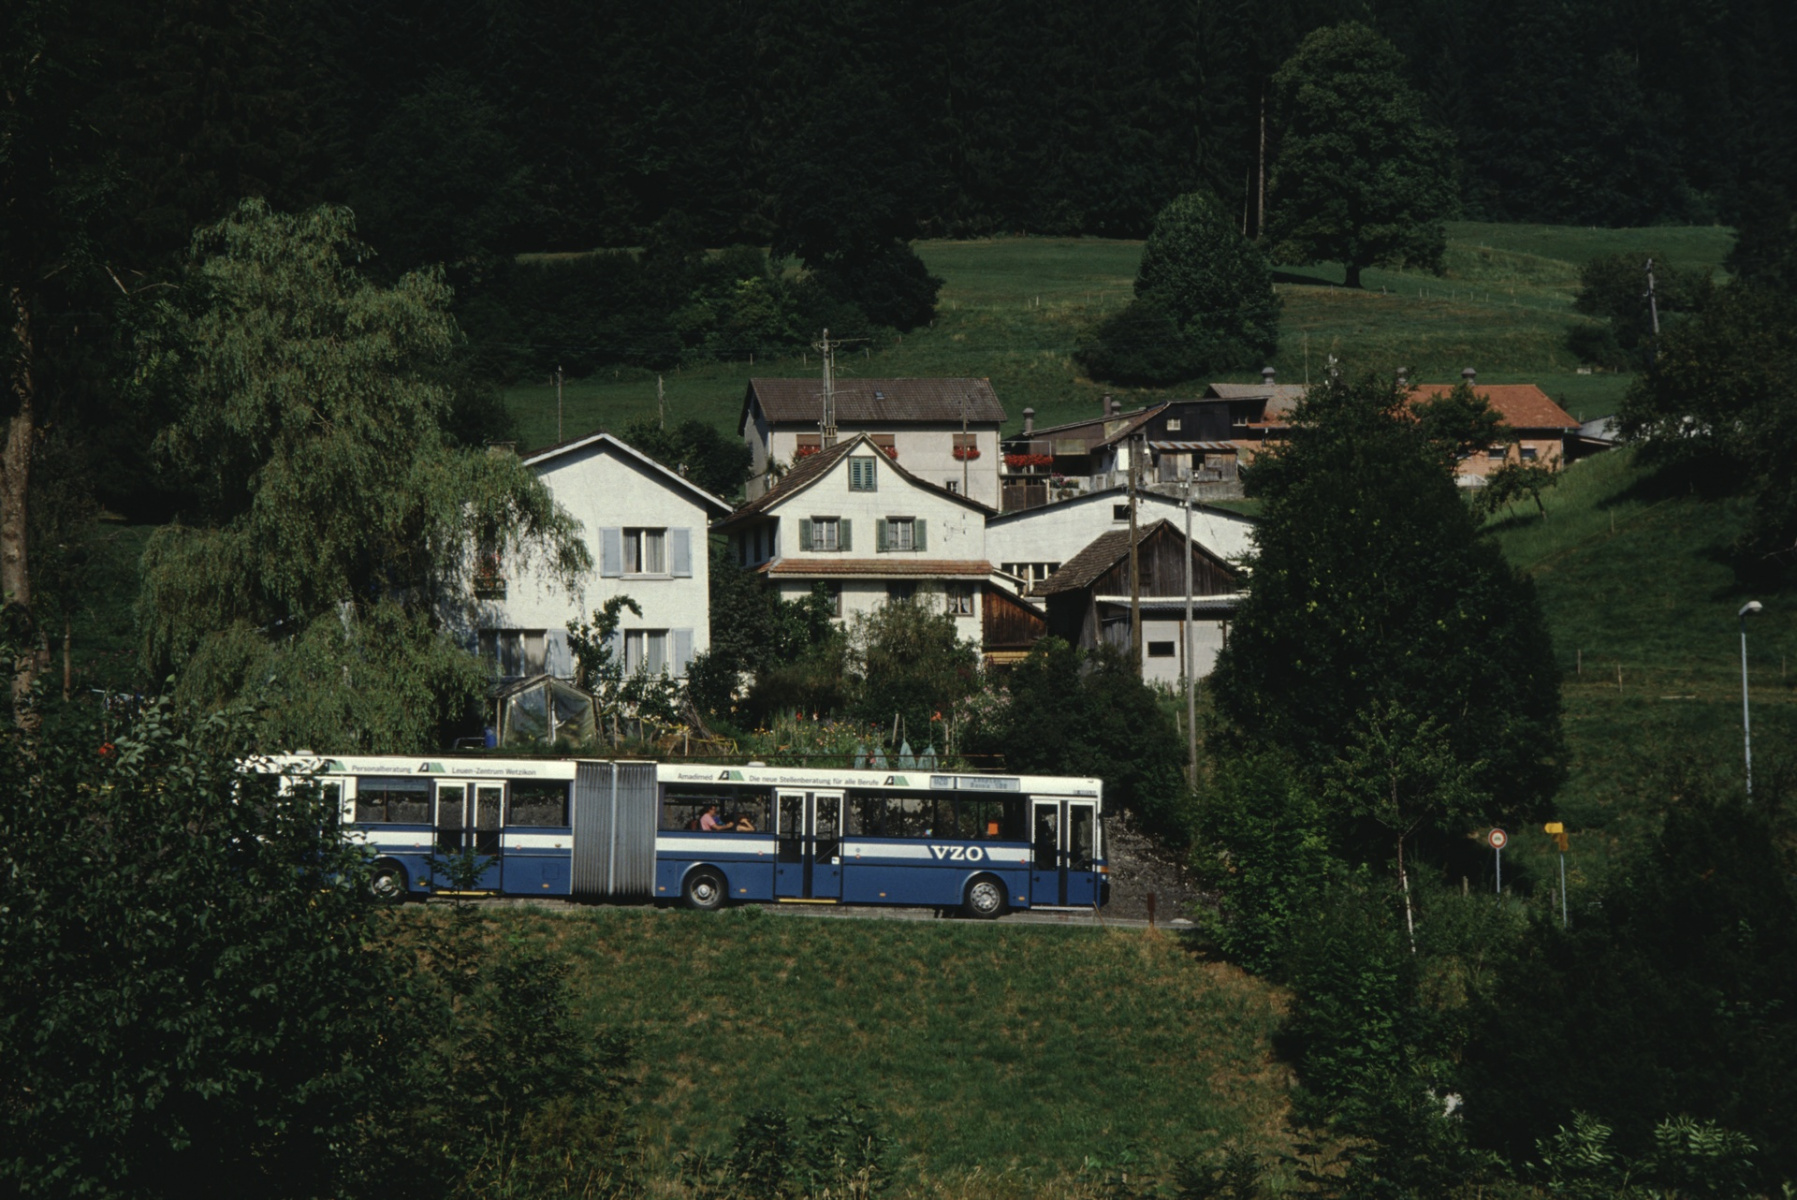 Neuthal mit Baumer-VZO-Bus